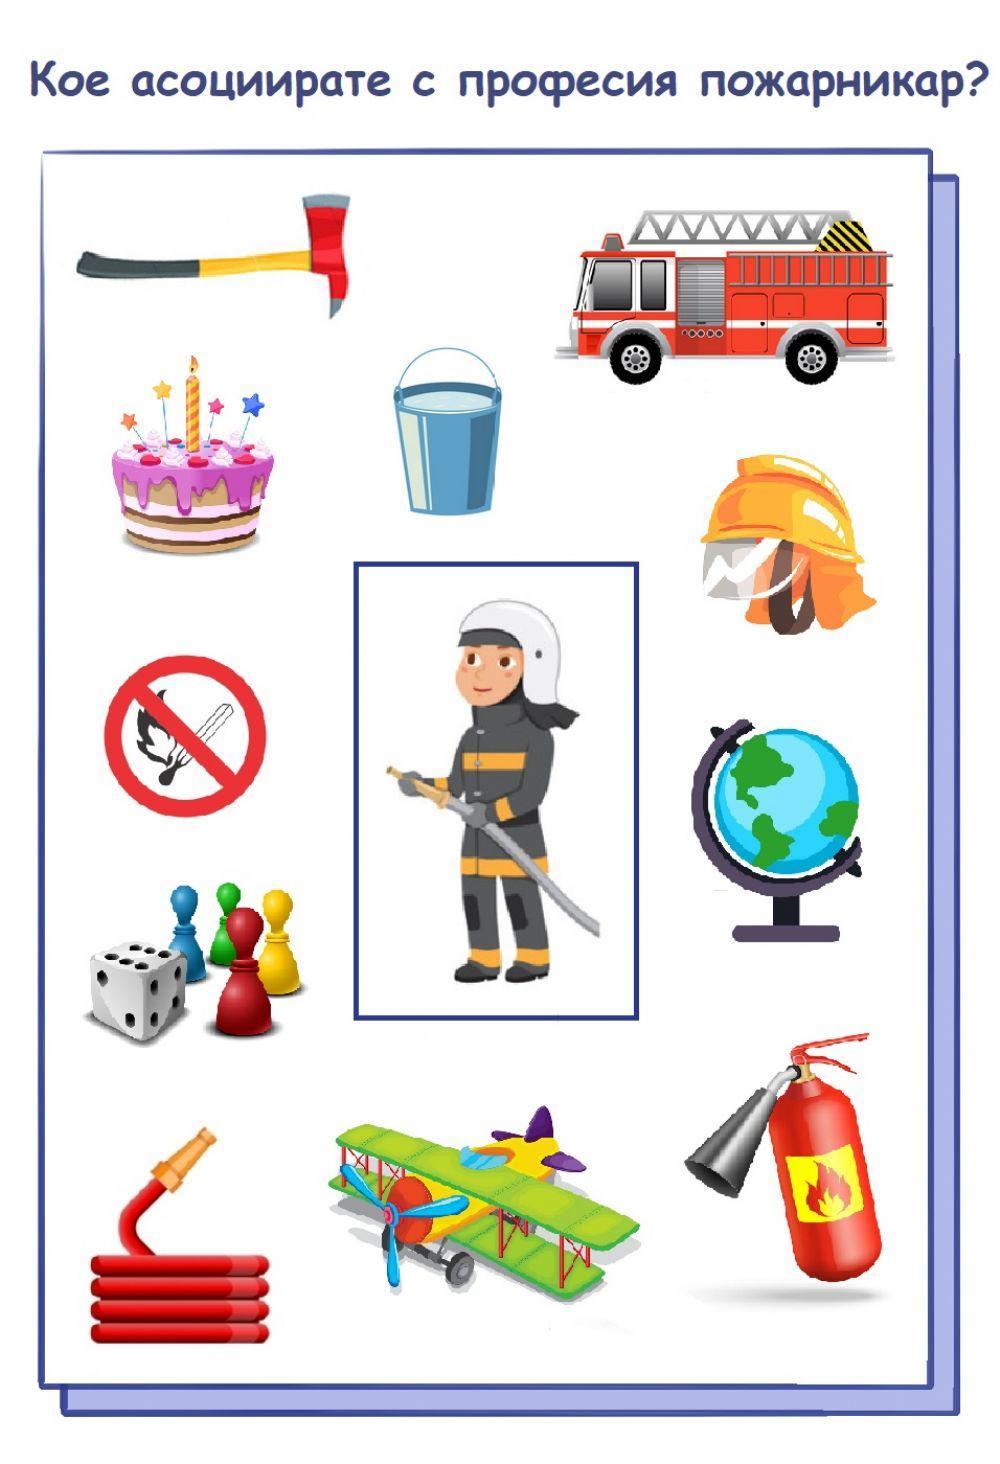 Кое асоциирате с професия пожарникар?